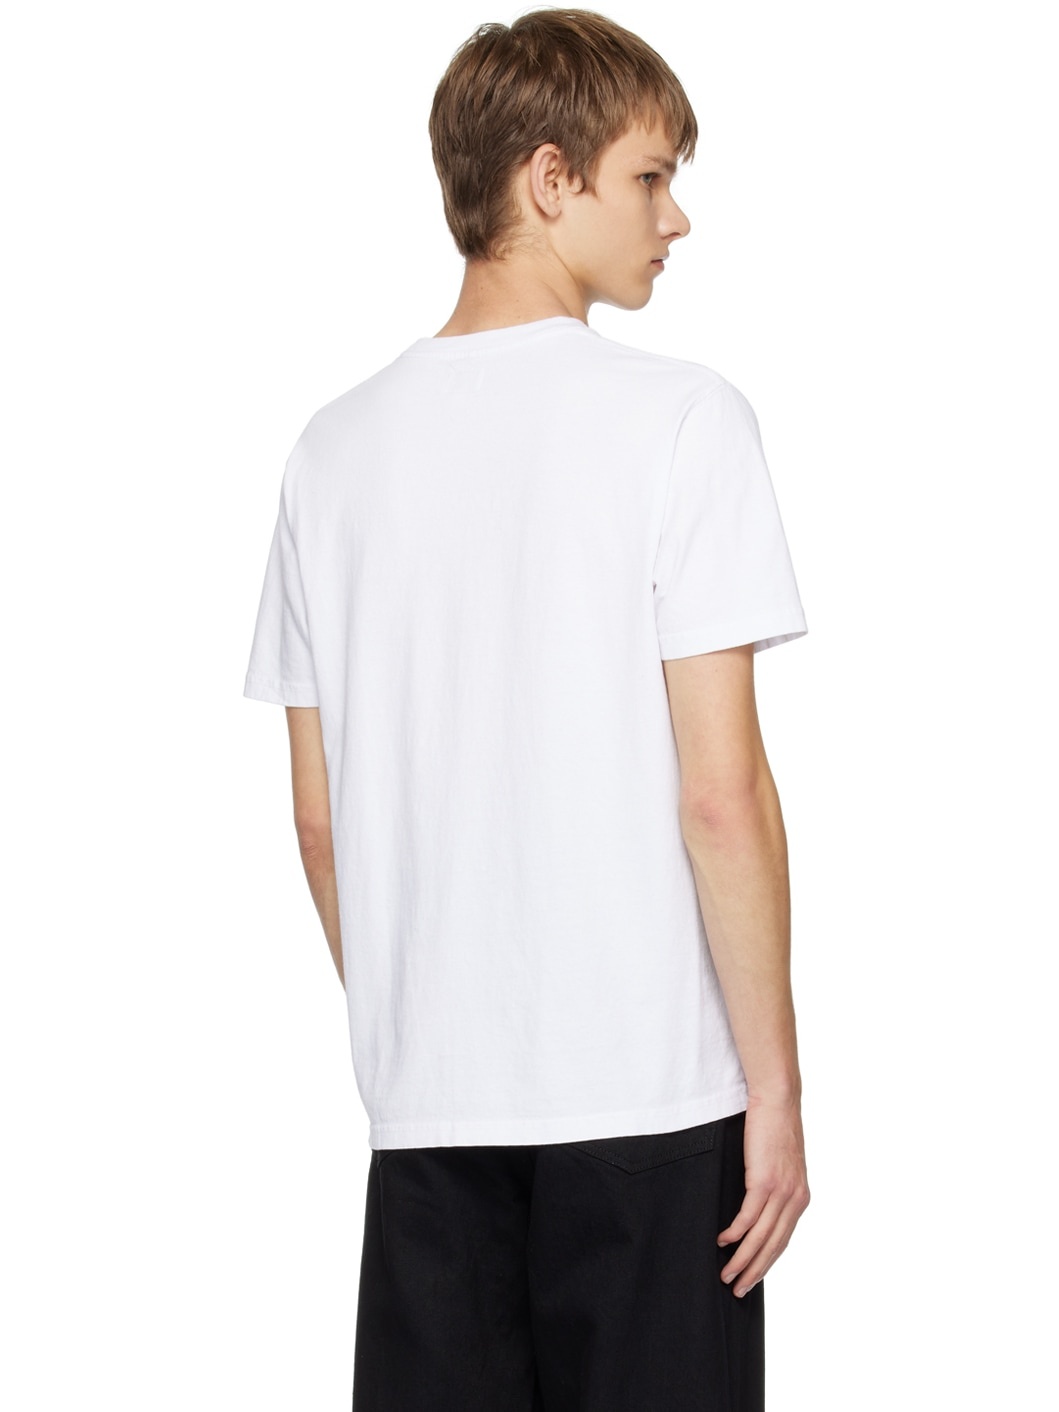 White Heavyweight T-Shirt - 3